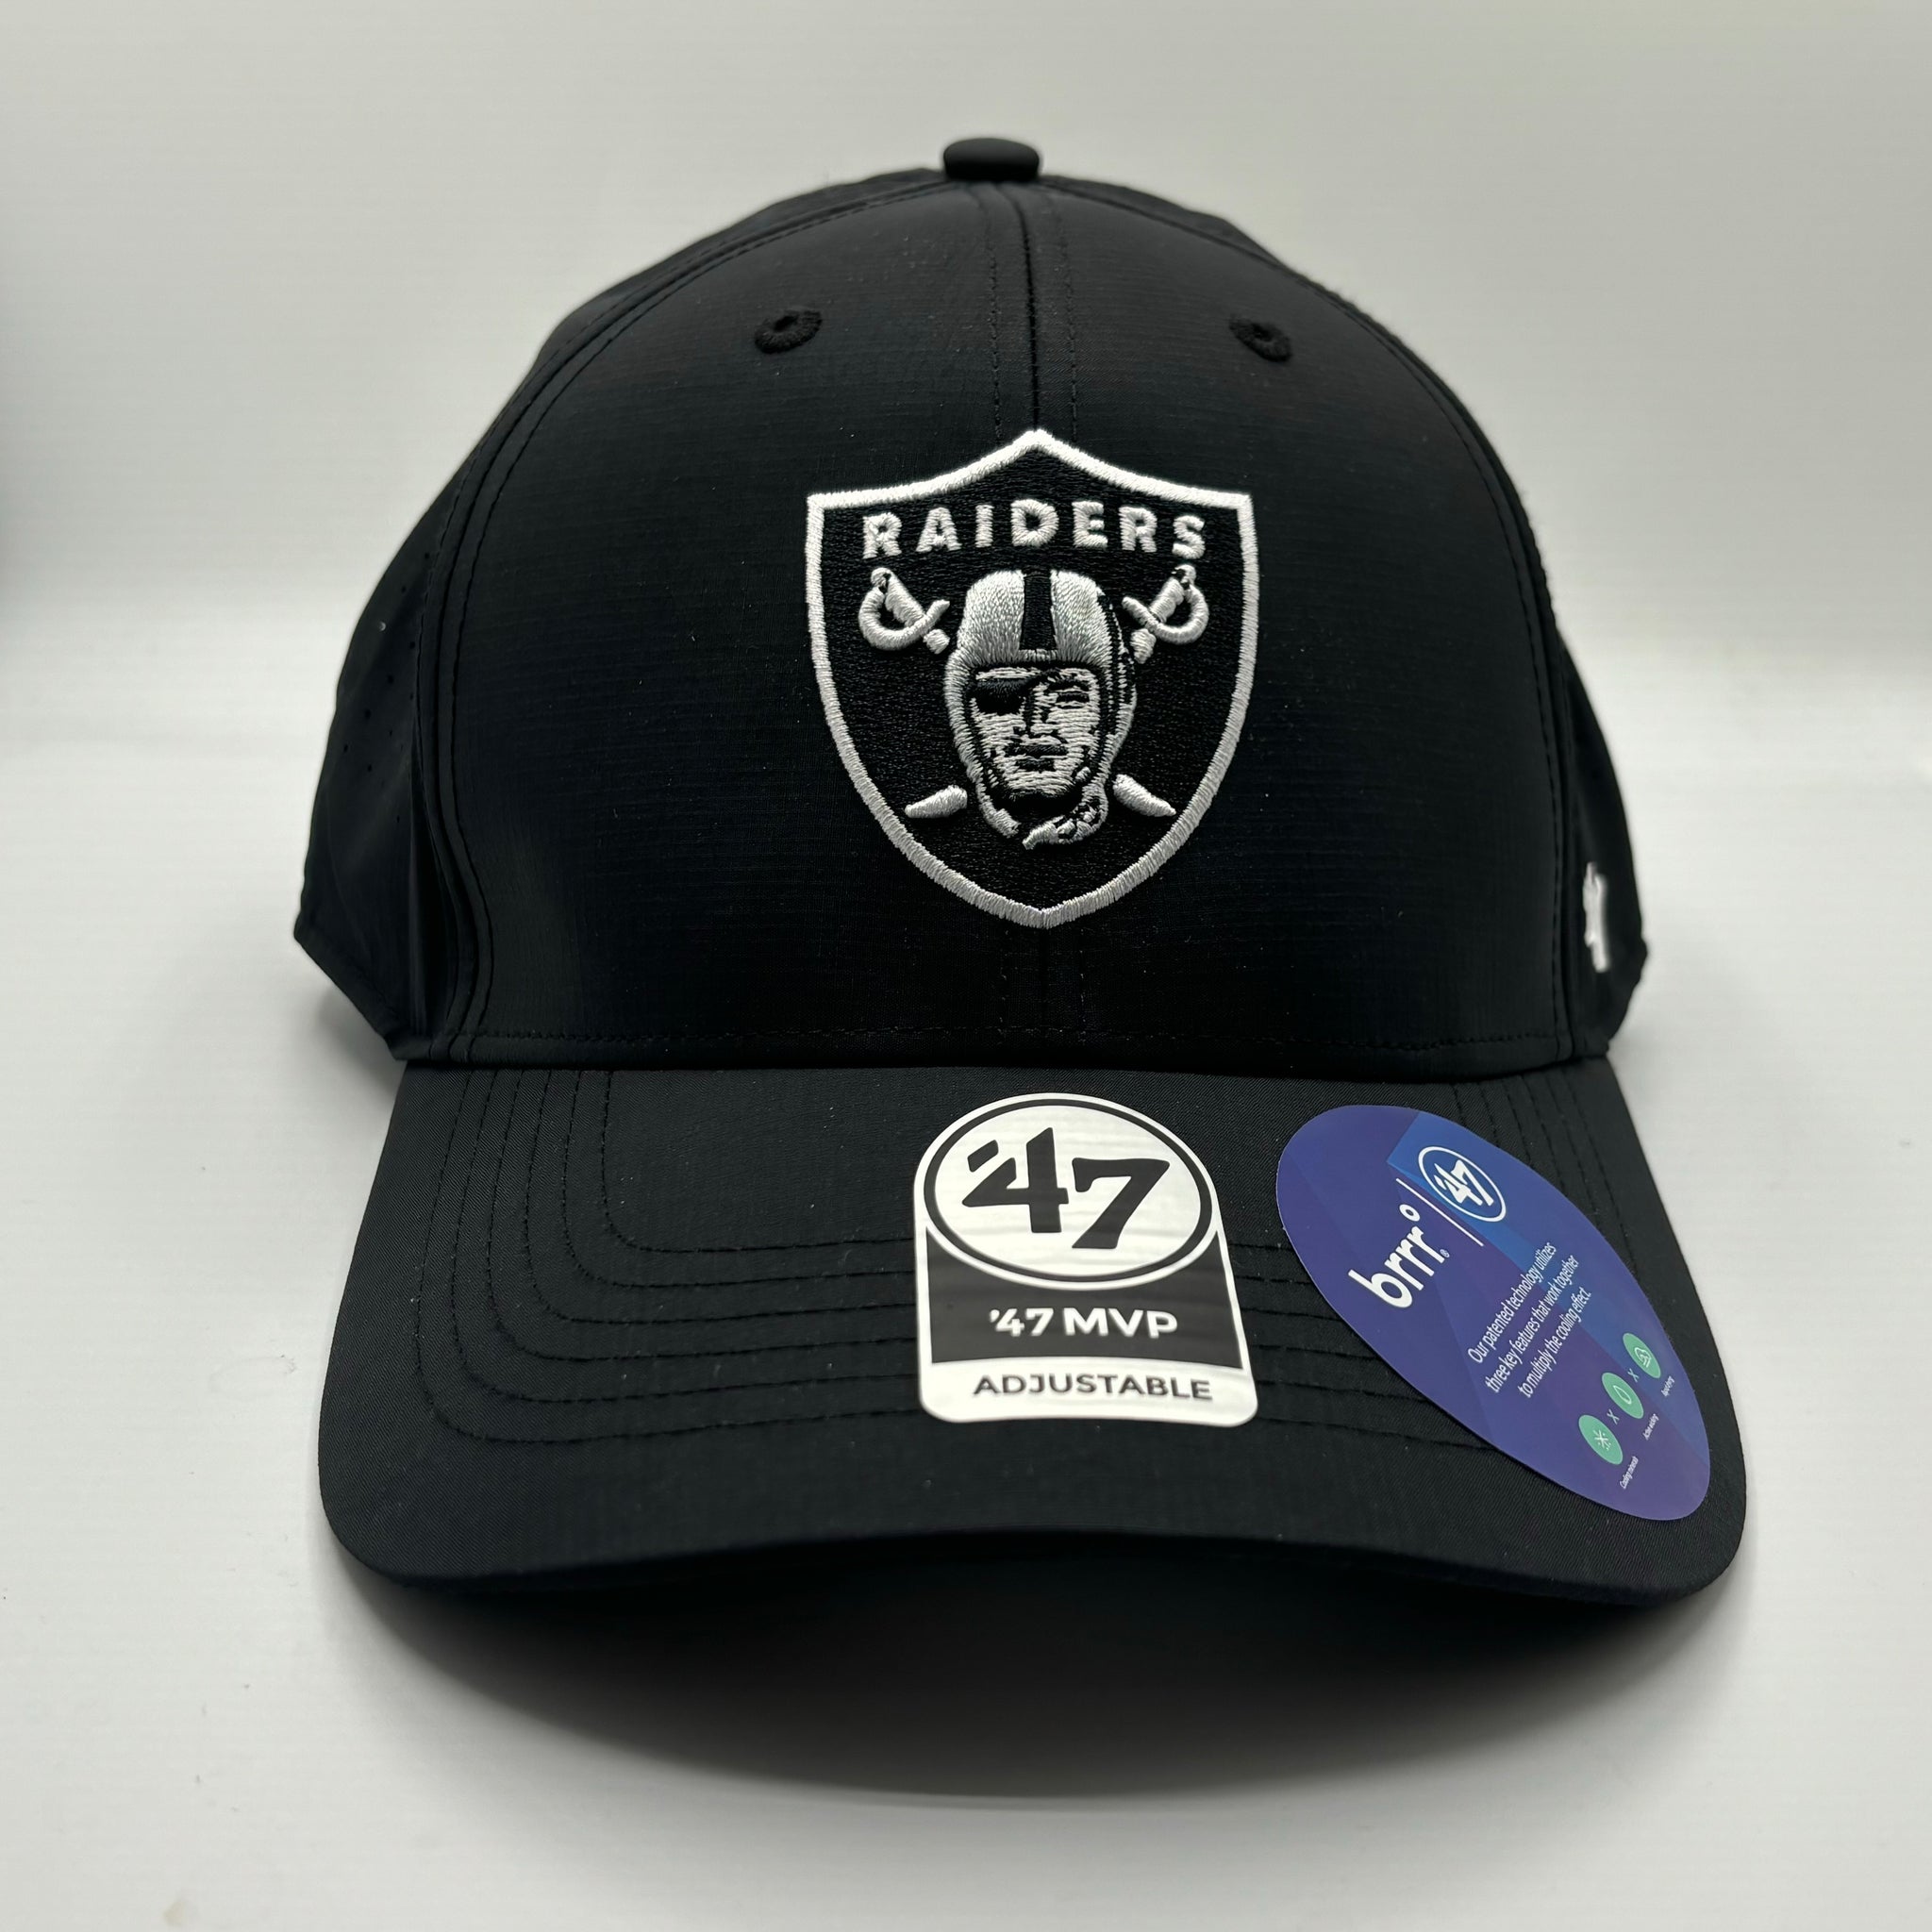 Las Vegas Raiders '47 Brrr MVP Adjustable Black Hat